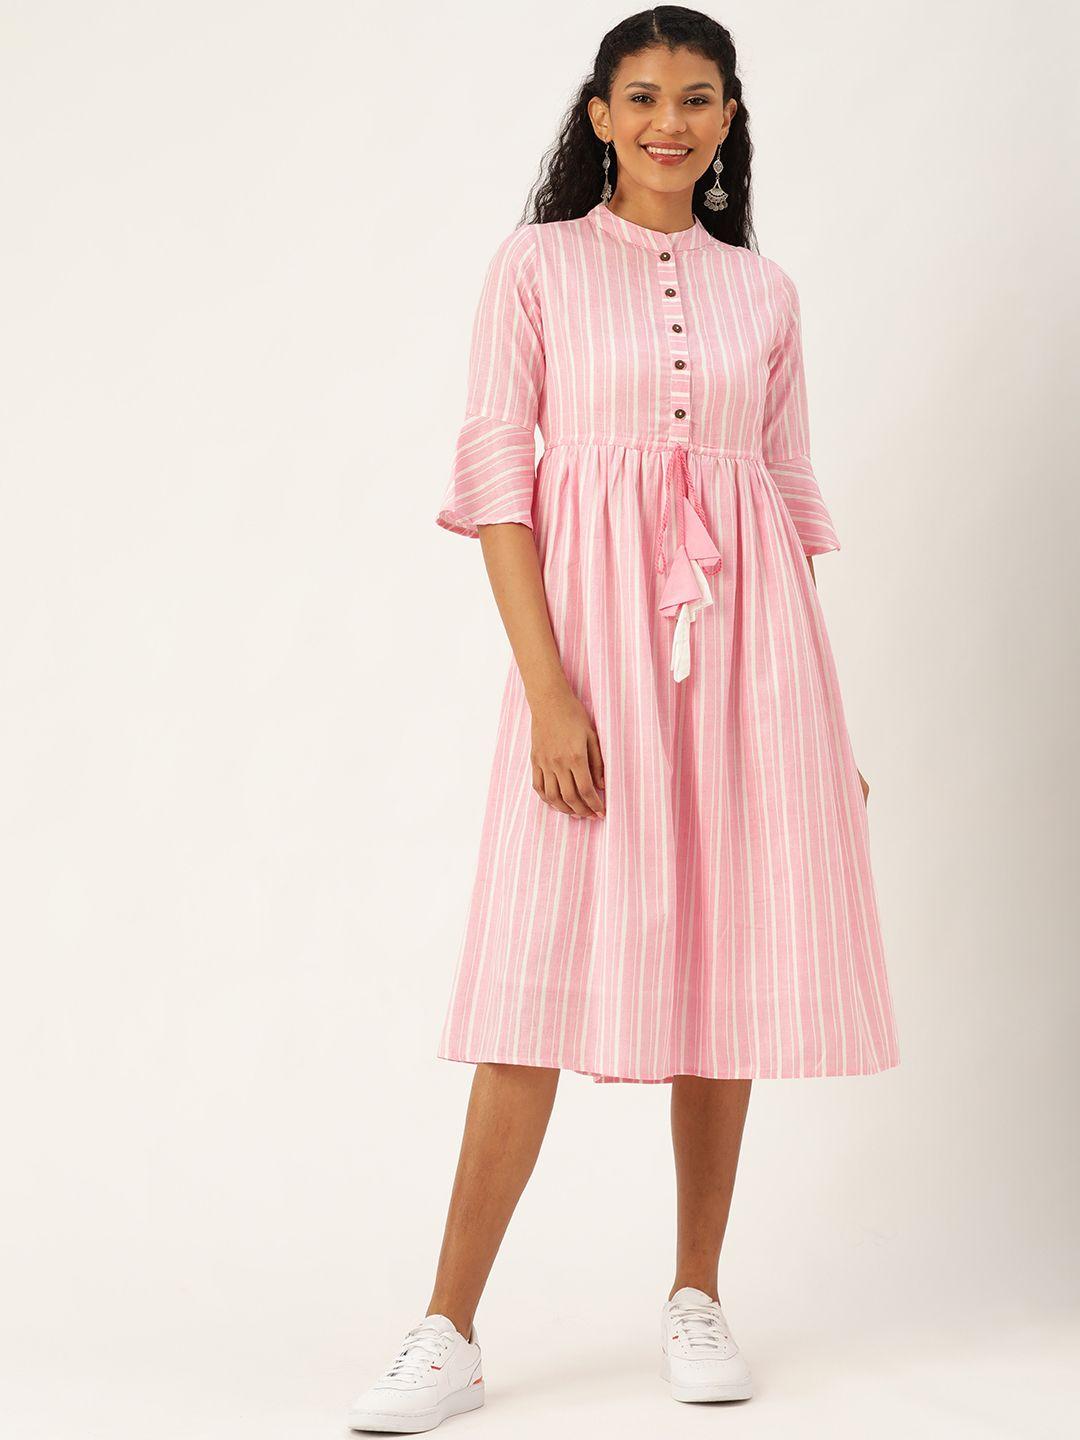 shae-by-sassafras-women-pink-&-white-striped-a-line-dress